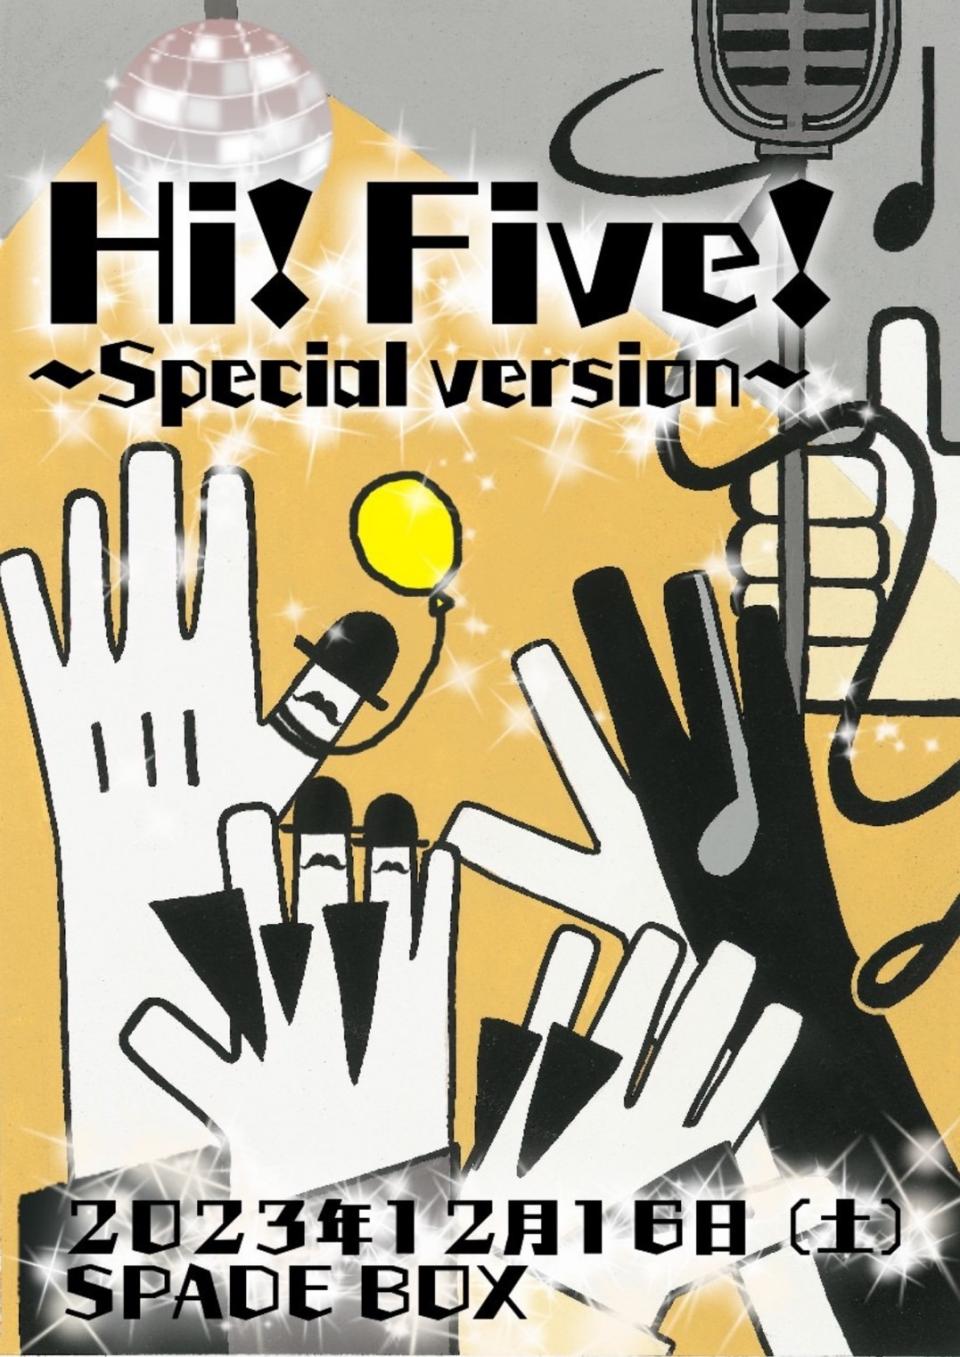 「Hi! Five! -special ver.-」チケット絶賛販売中‼